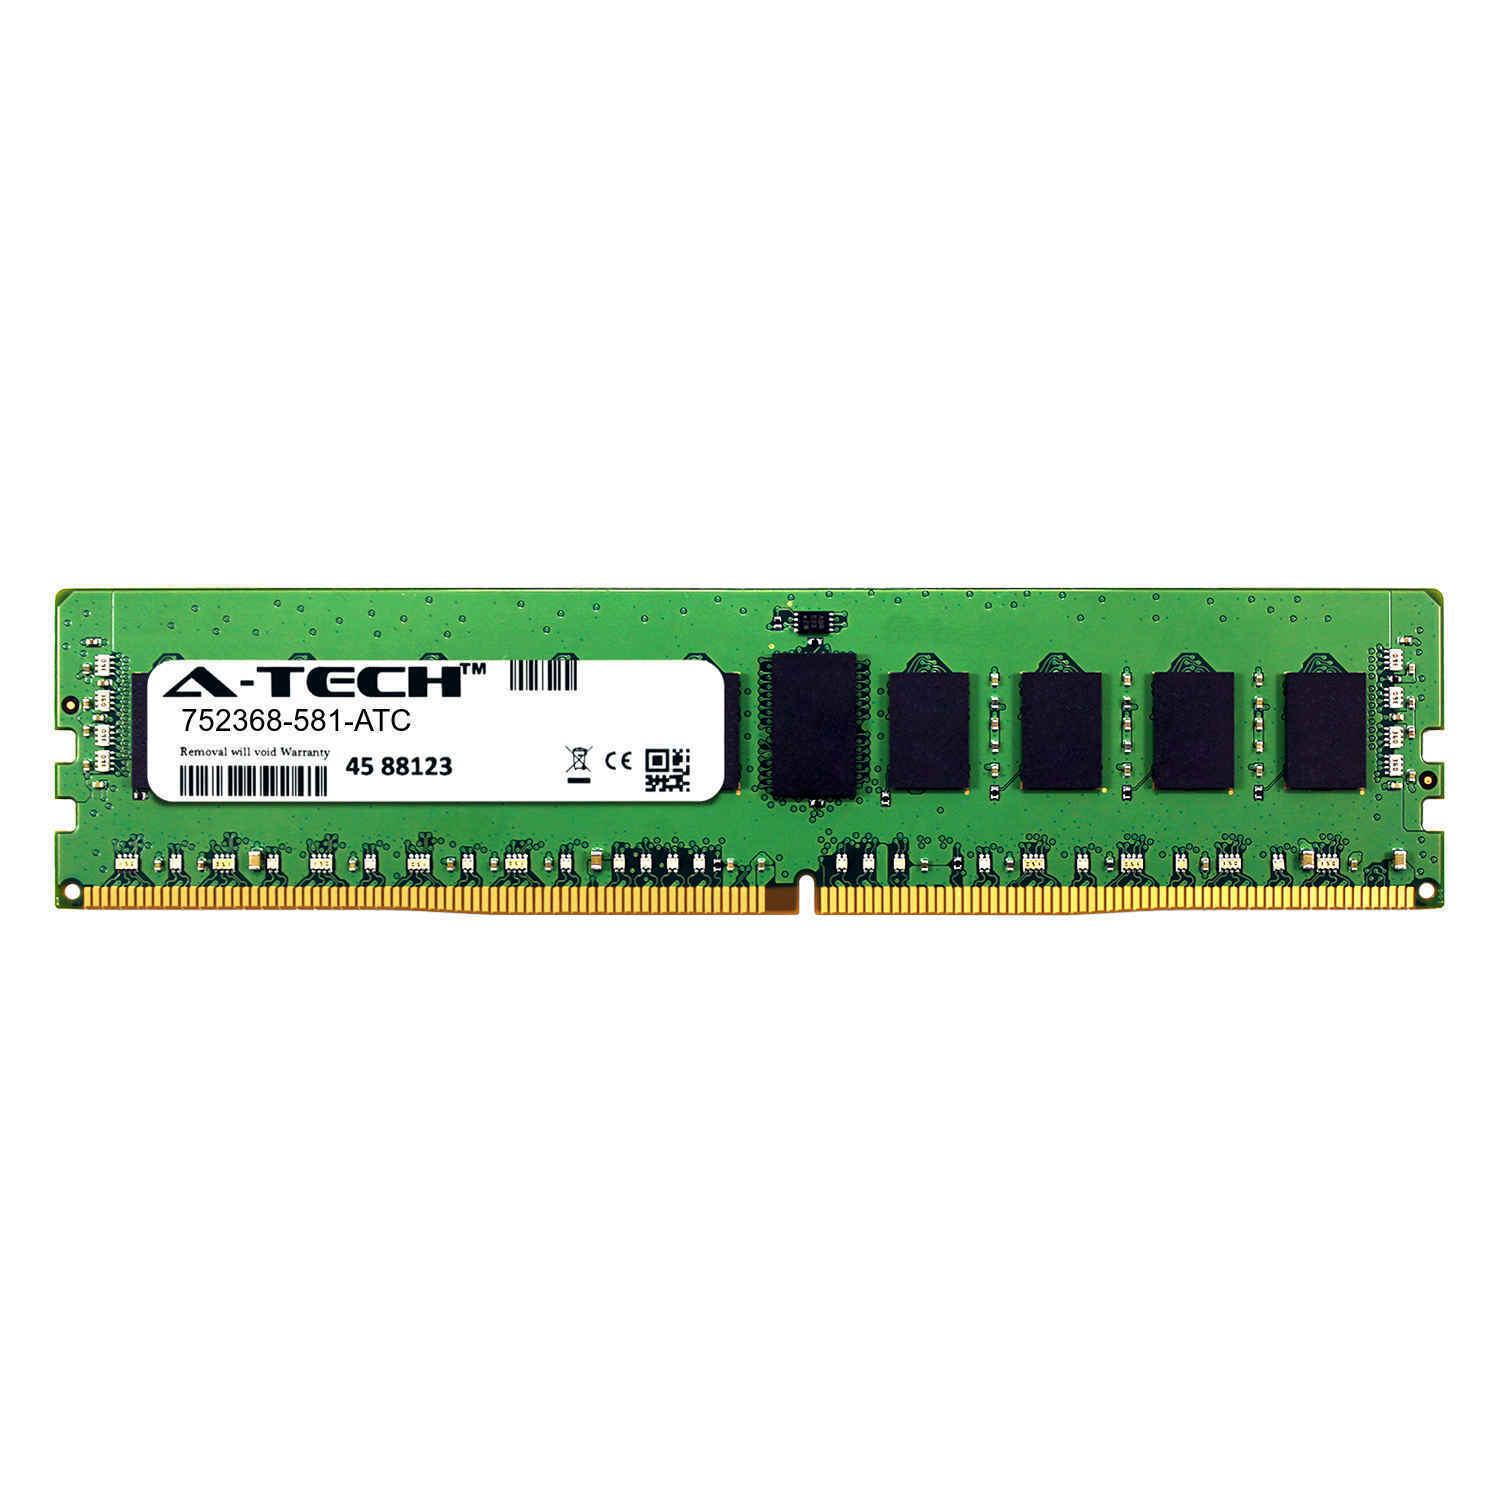 8GB DDR4 2133MHz PC4-17000 RDIMM MEMORIA EQUIVALENTE HP 752368-581